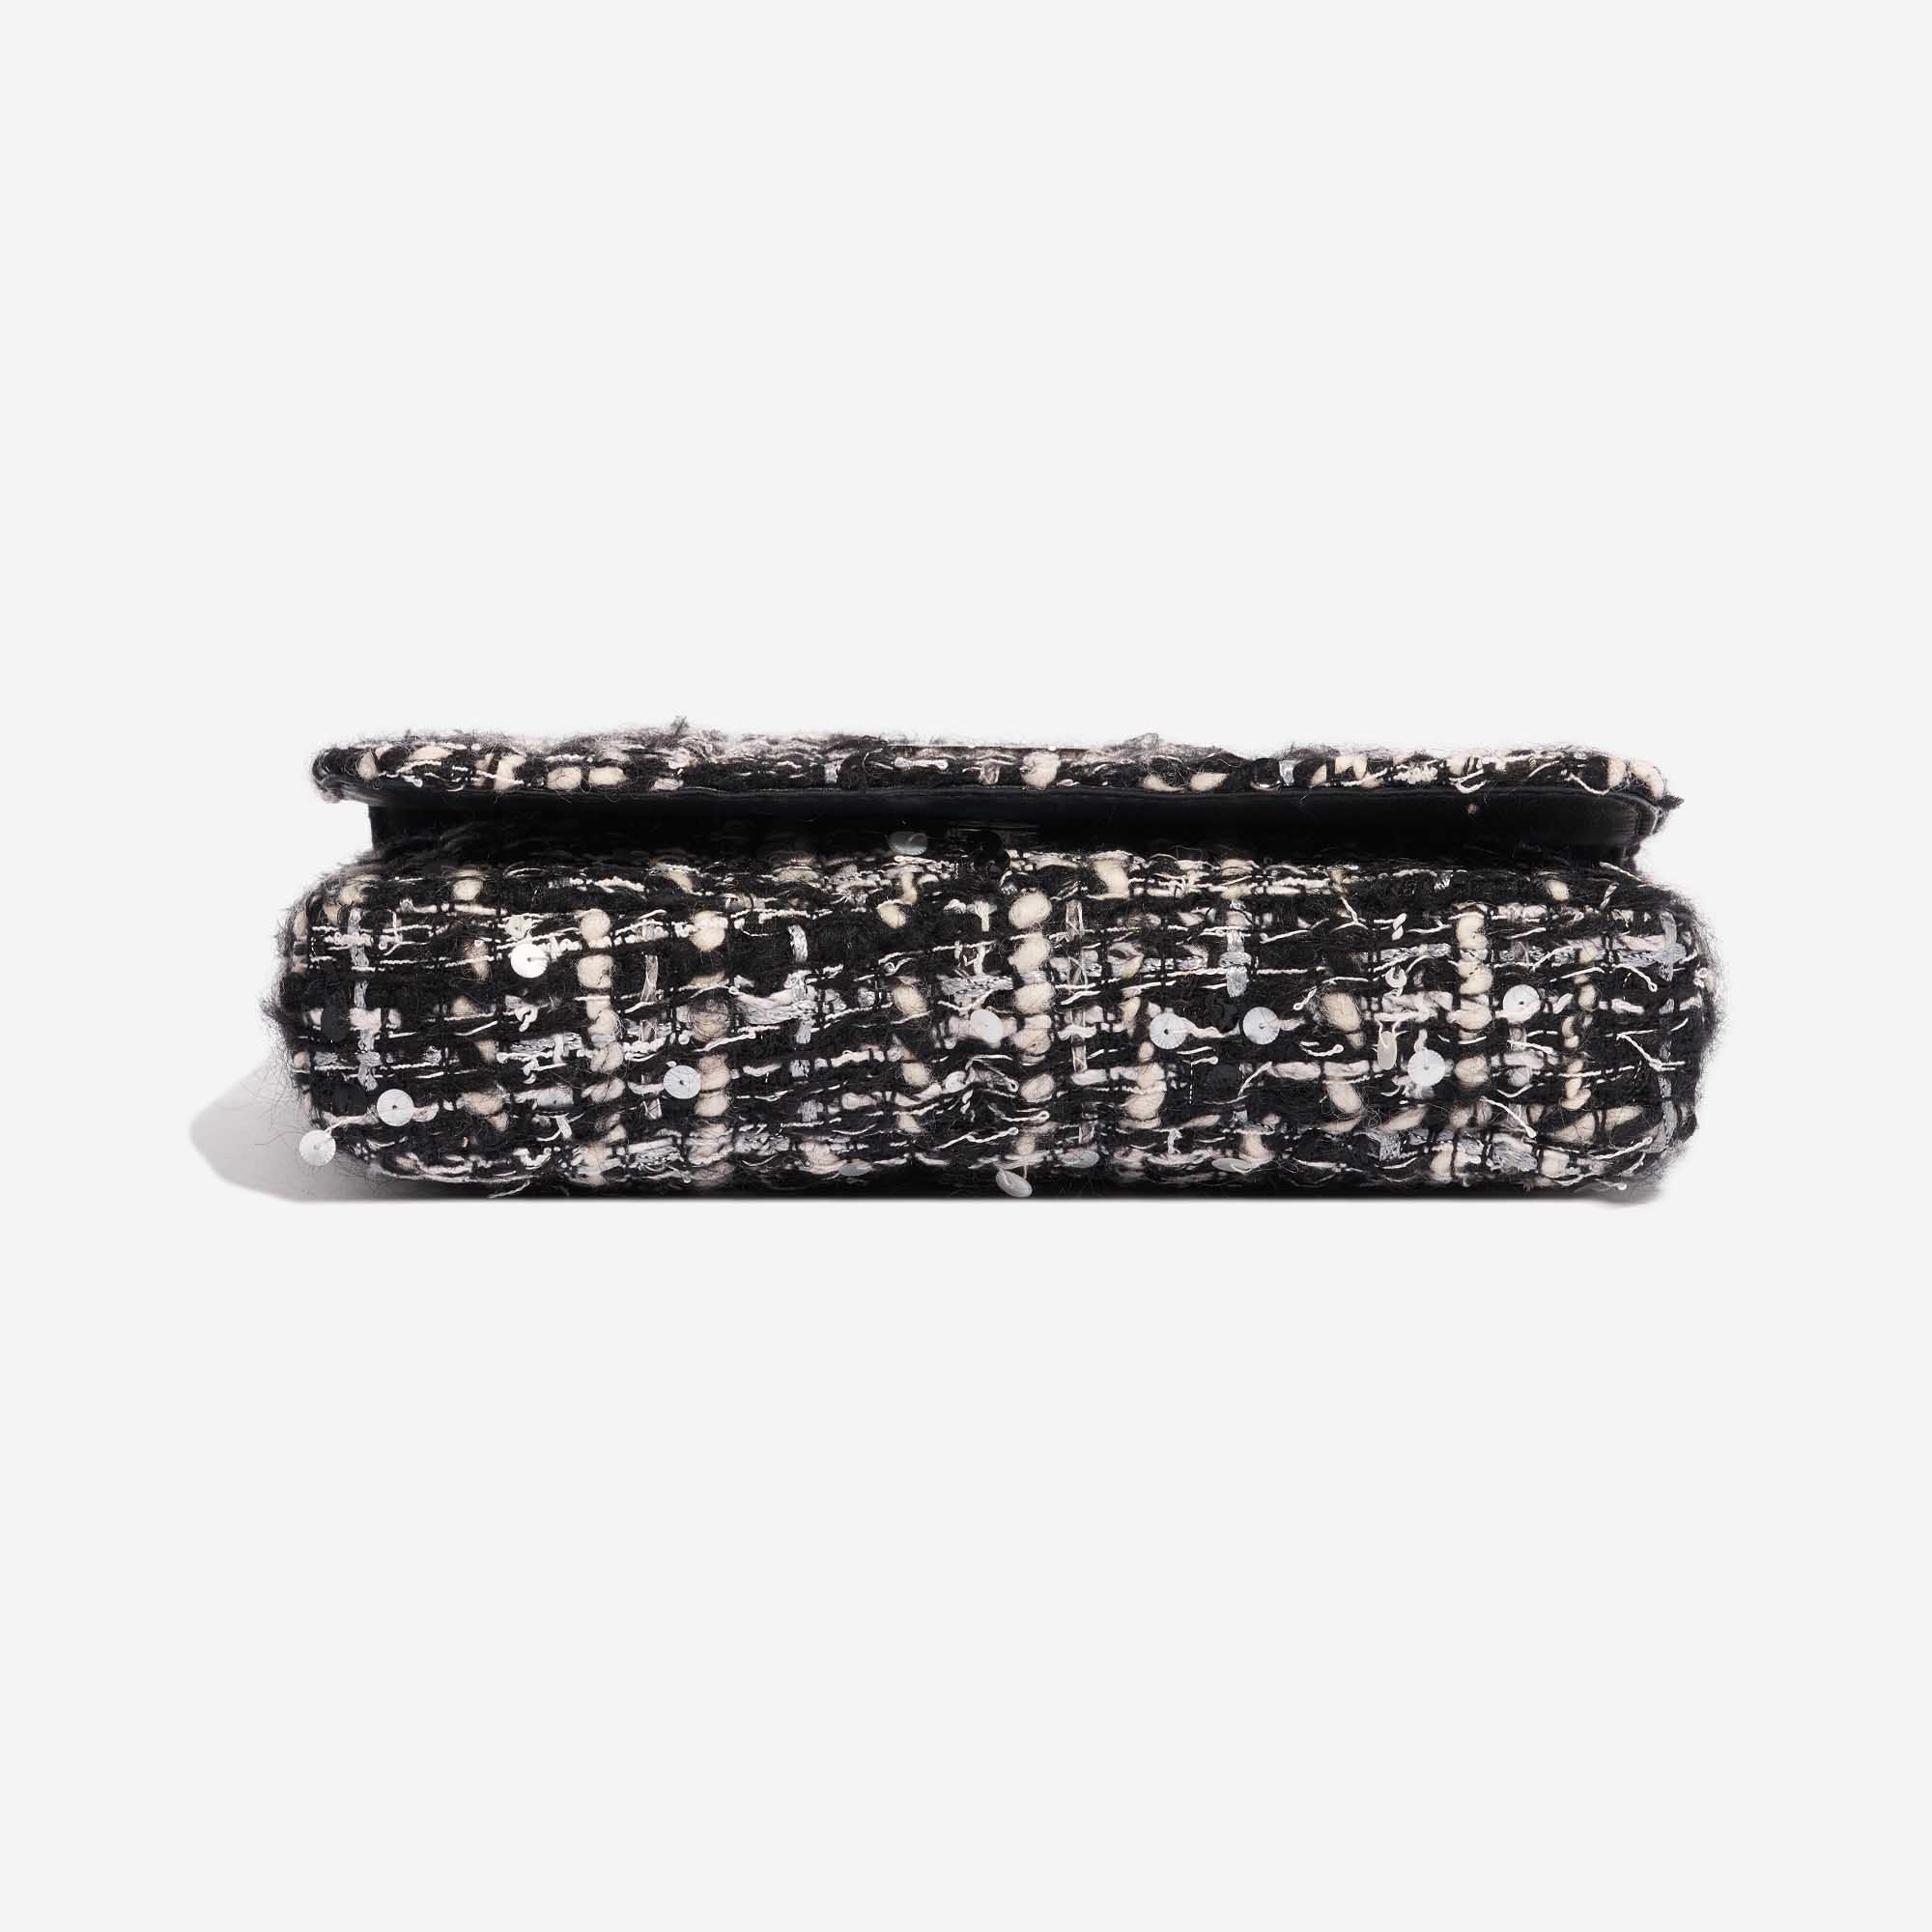 Chanel Vintage Flap Small Tweed Black / White | SACLÀB